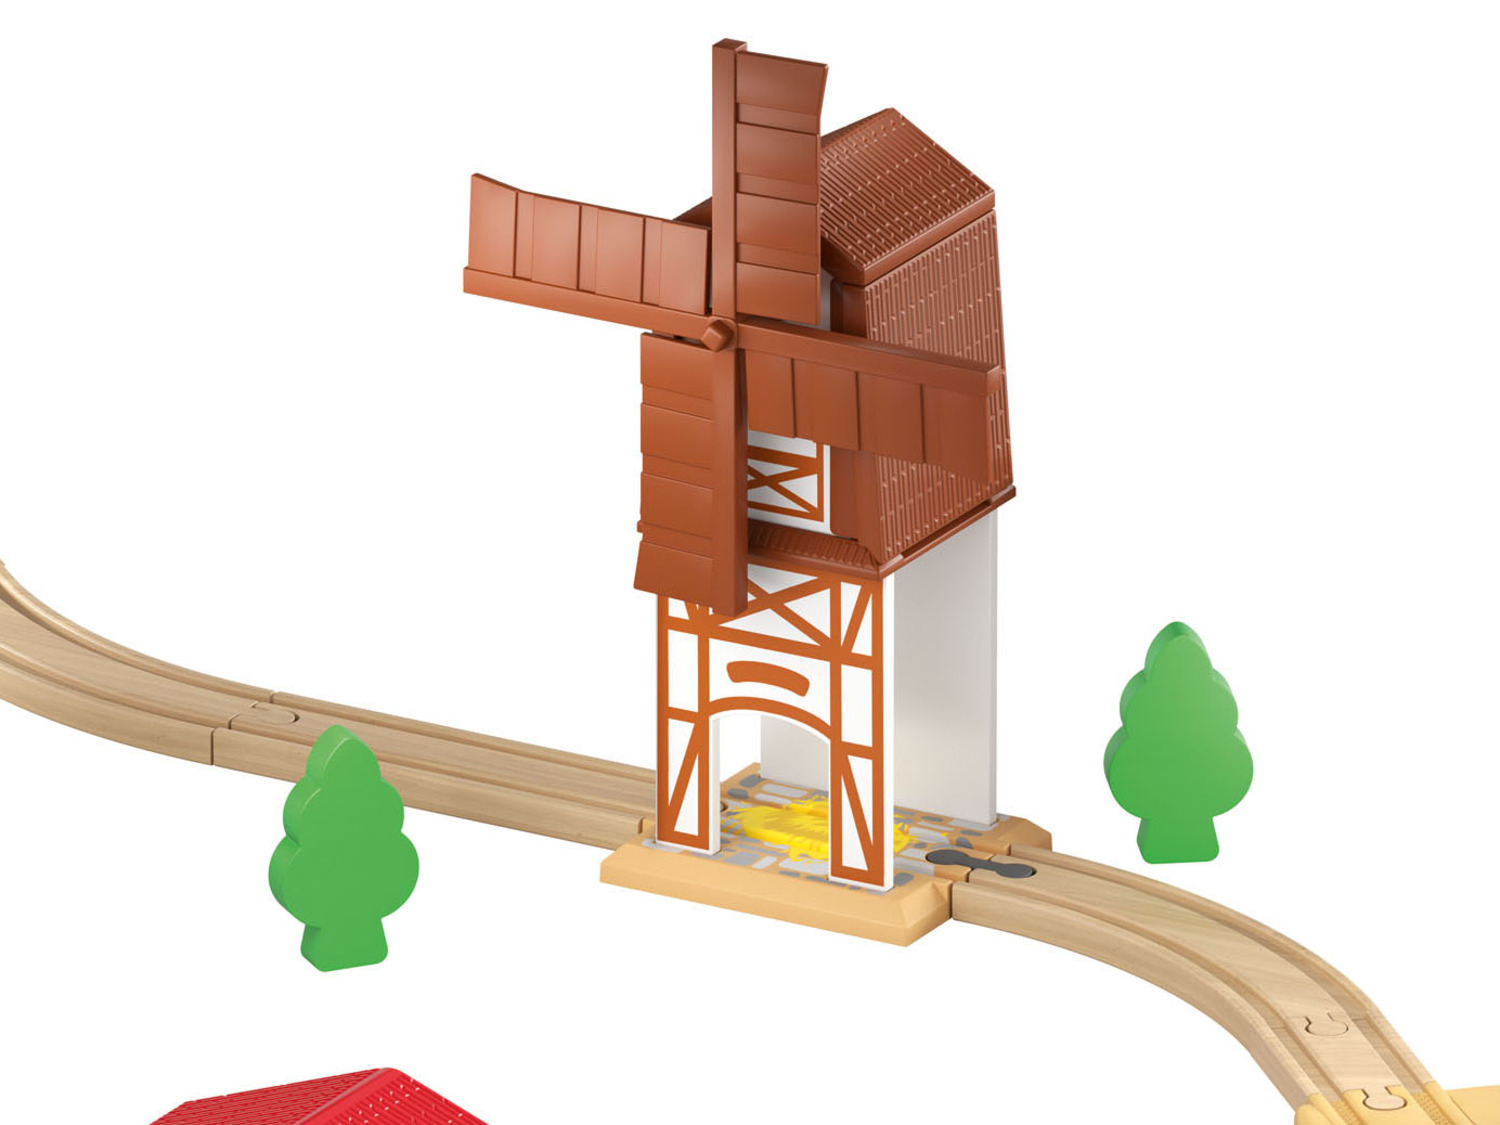 Playtive Set de chemin de fer en bois ferme ou pompiers